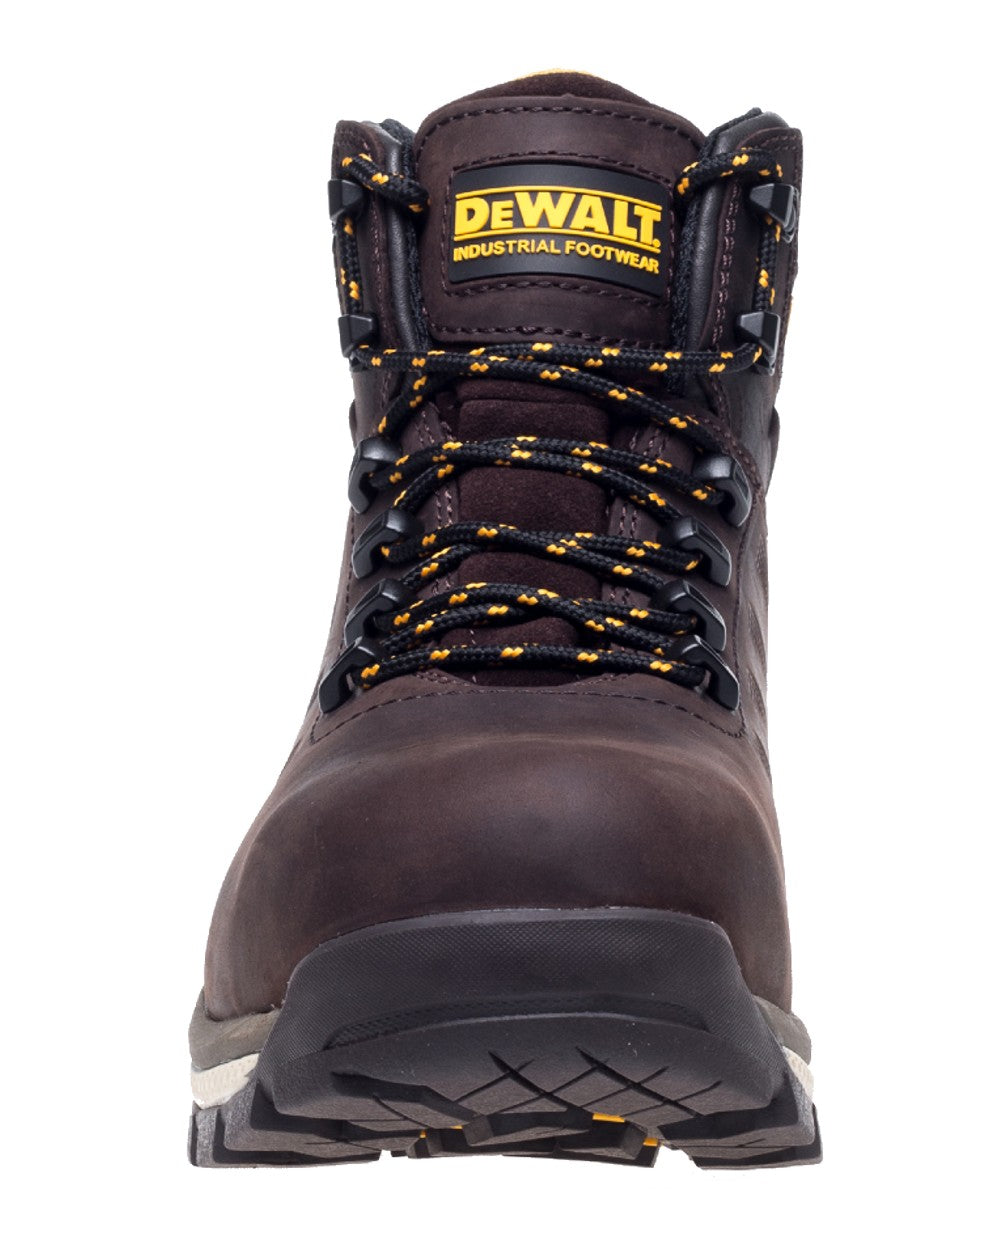 DeWalt Hammer Non-Metallic Safety Boot in Brown